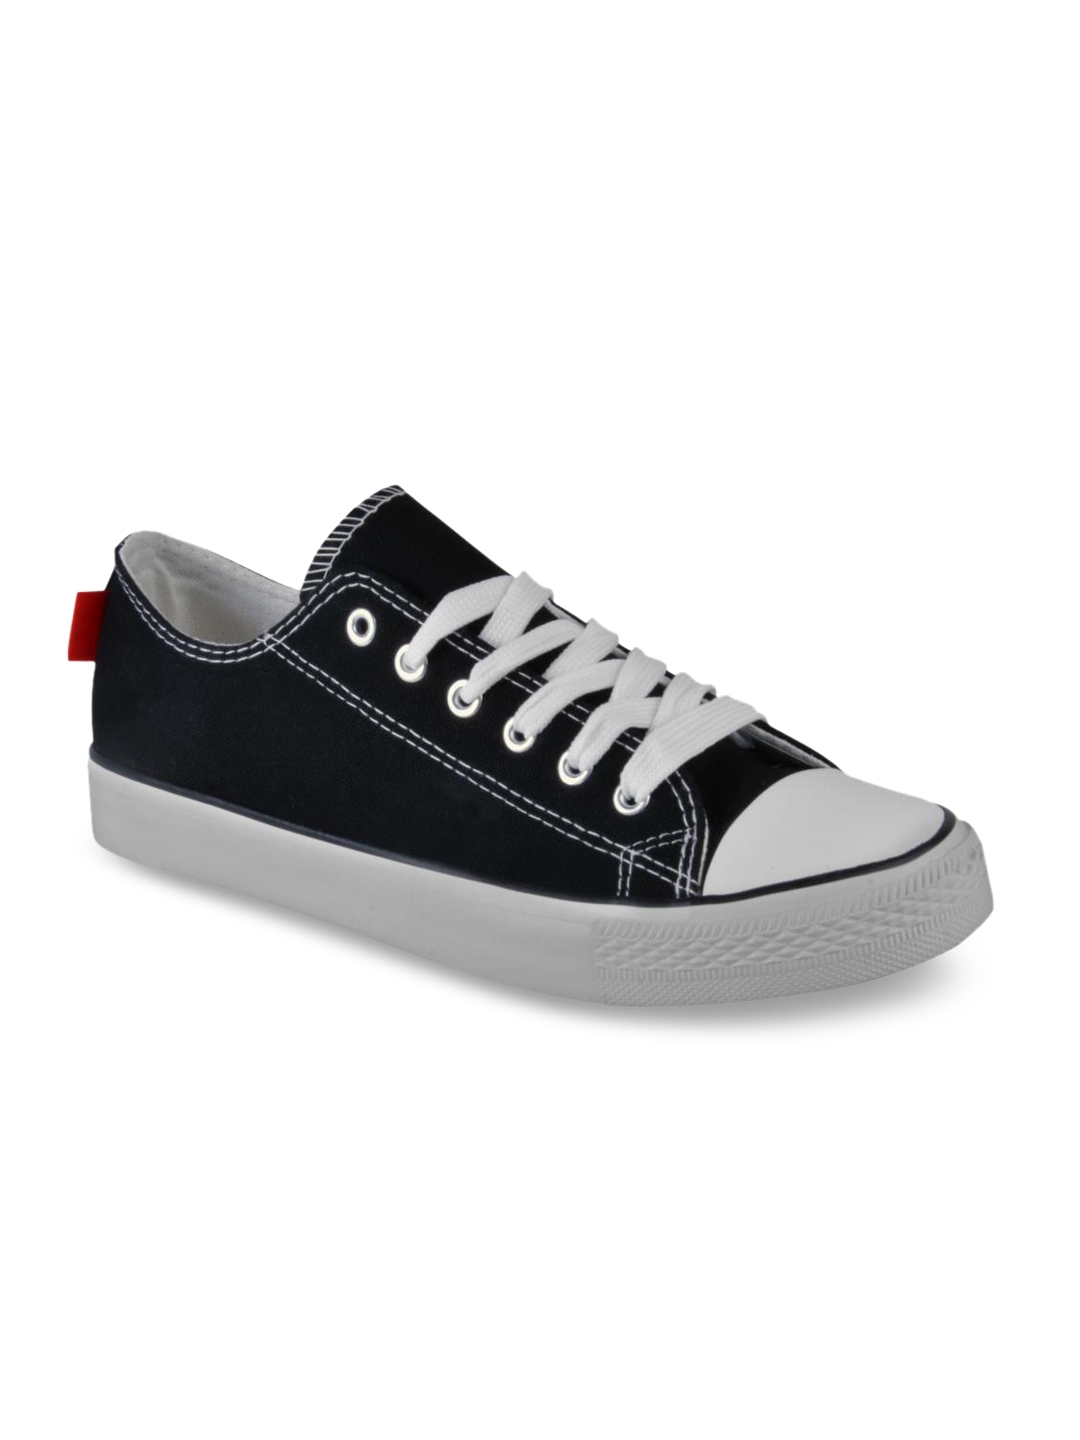 Buy Harvard Men Black Sneakers - Casual Shoes for Men 9799521 | Myntra